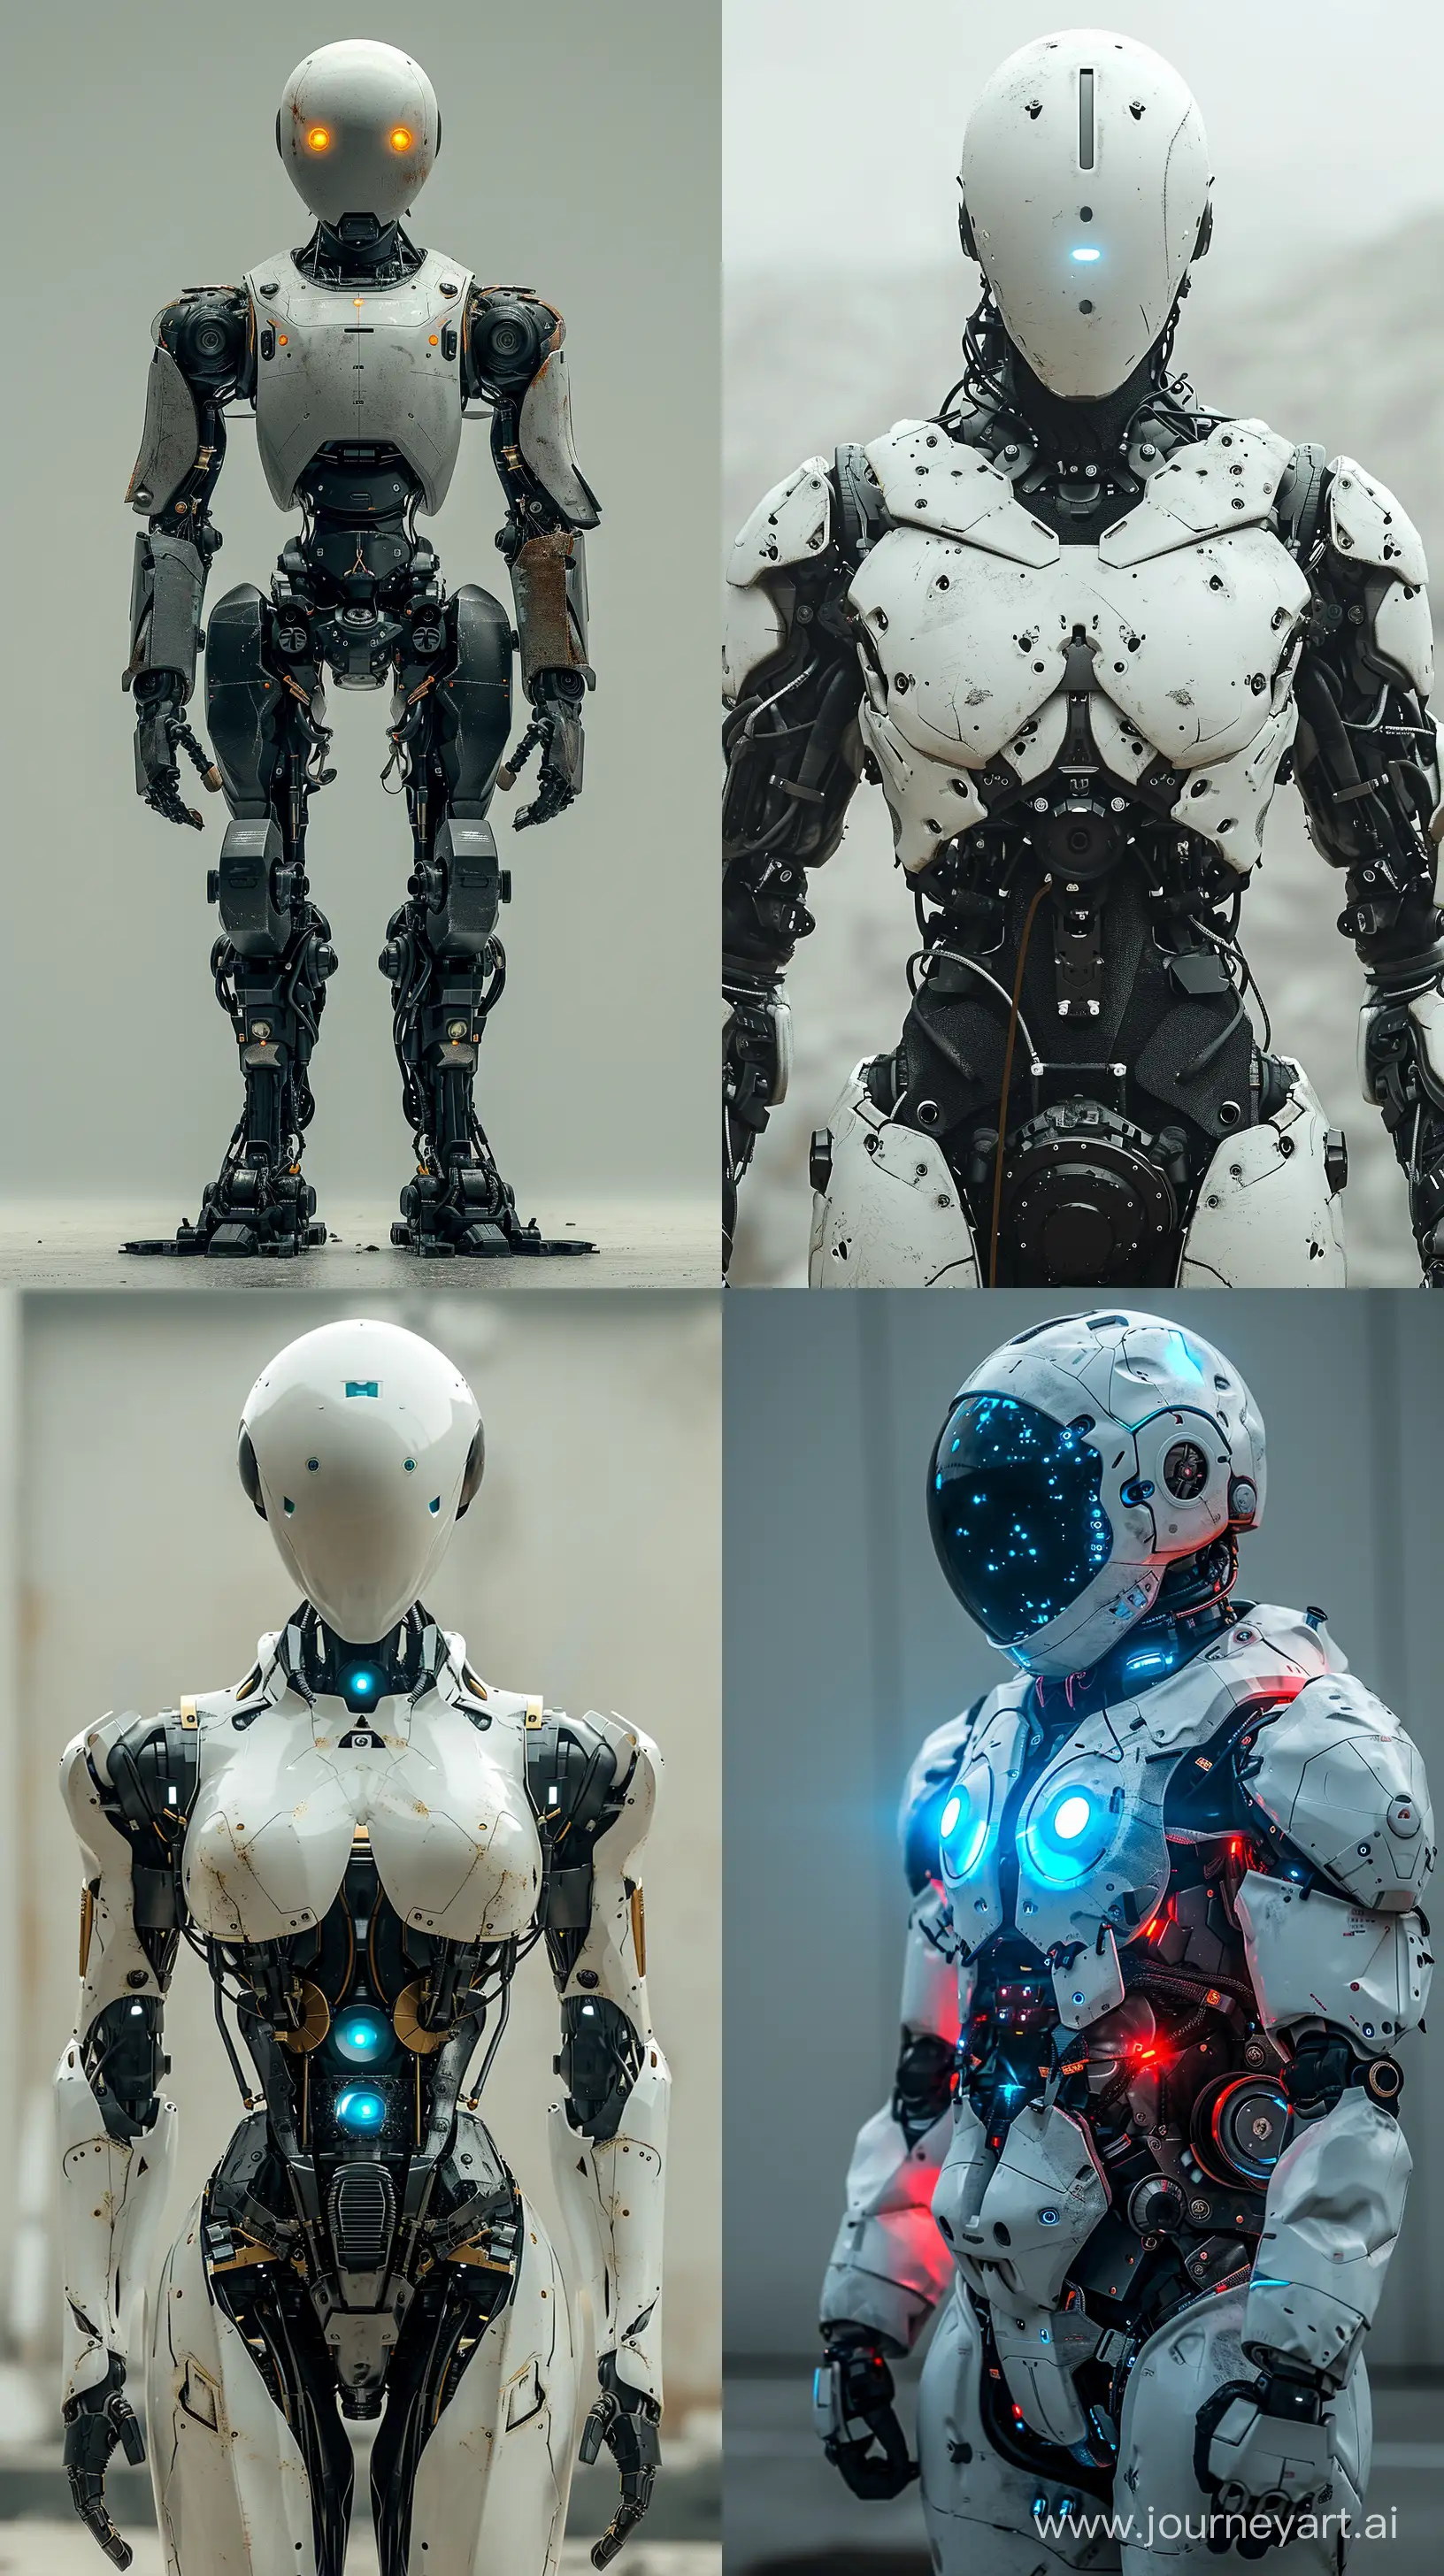 Робот стоит в полный рост со светящимися голубыми глазами, робот сломанный::1.2, поломанный робот, стоит в интересной необычной позе, 8K::1.2, V-ray, realism, --s 300 --ar 9:16